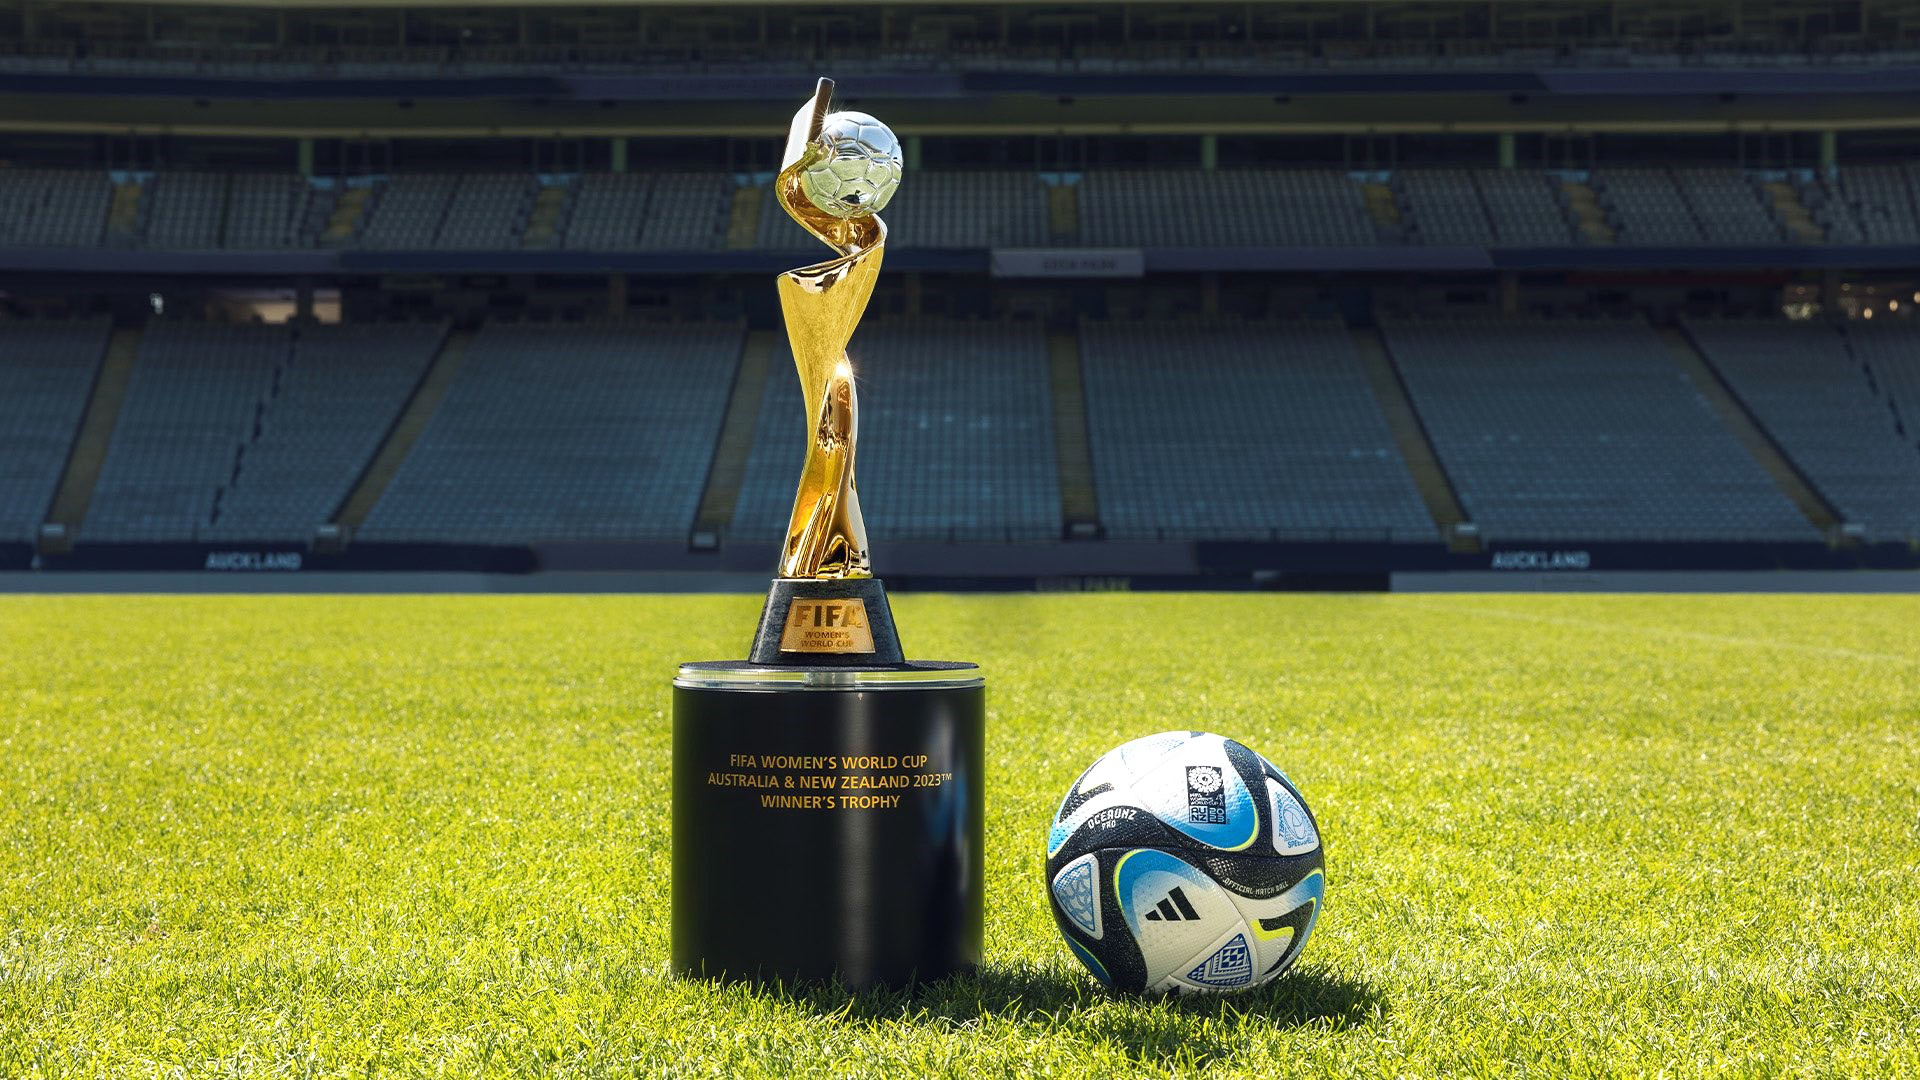 2023年世界足聯女子世界杯足球賽的金杯即將到達越南| 體育| Vietnam+ (VietnamPlus)